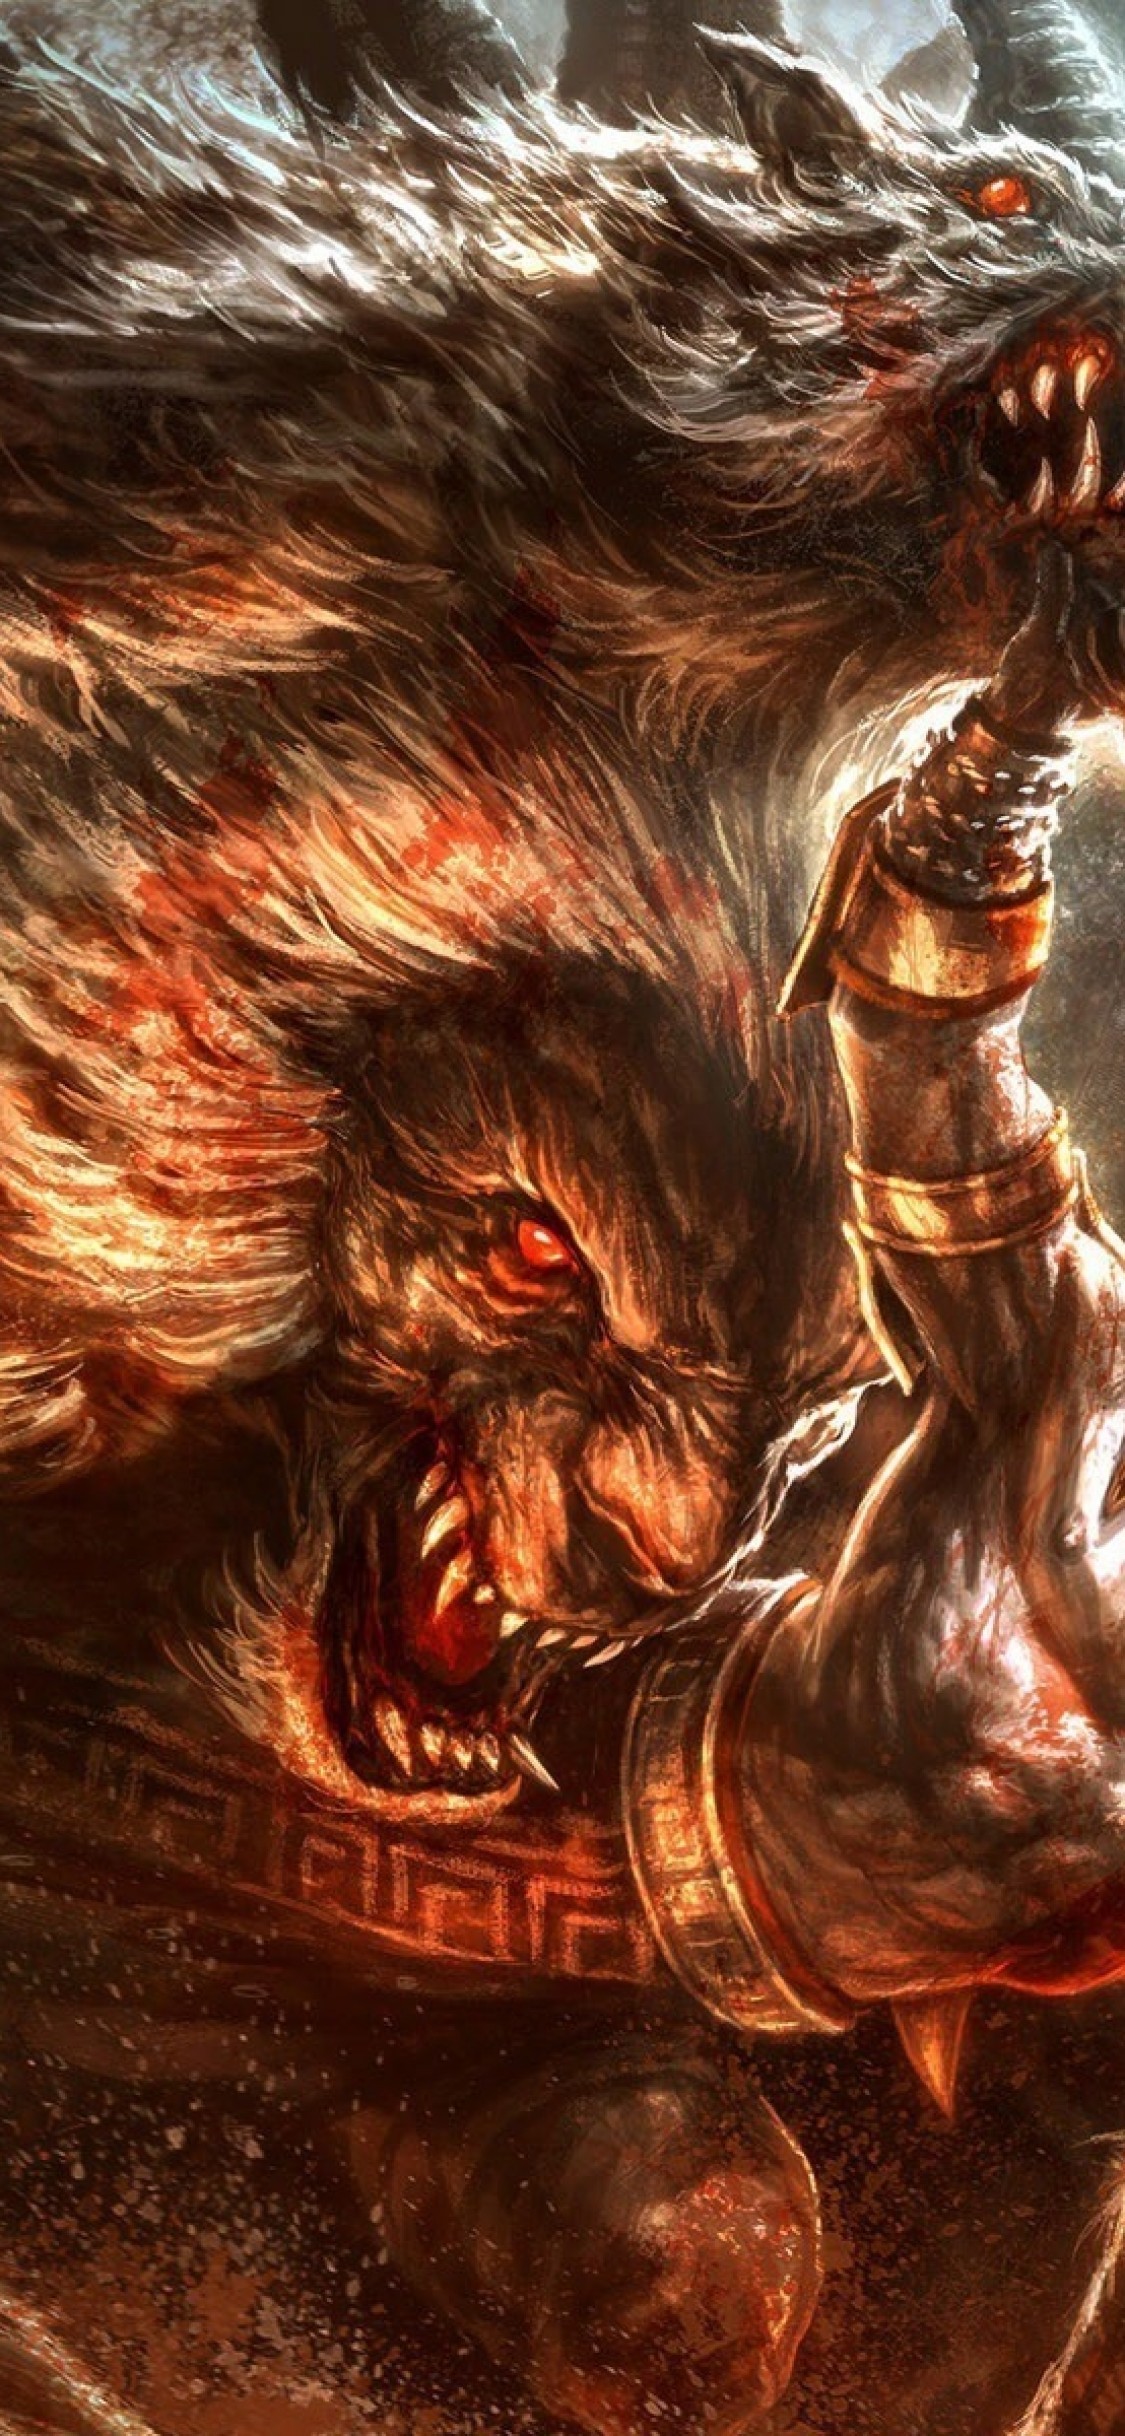 God Of War, Kratos, Lion Snake - Fire Lion Wallpaper Hd - HD Wallpaper 